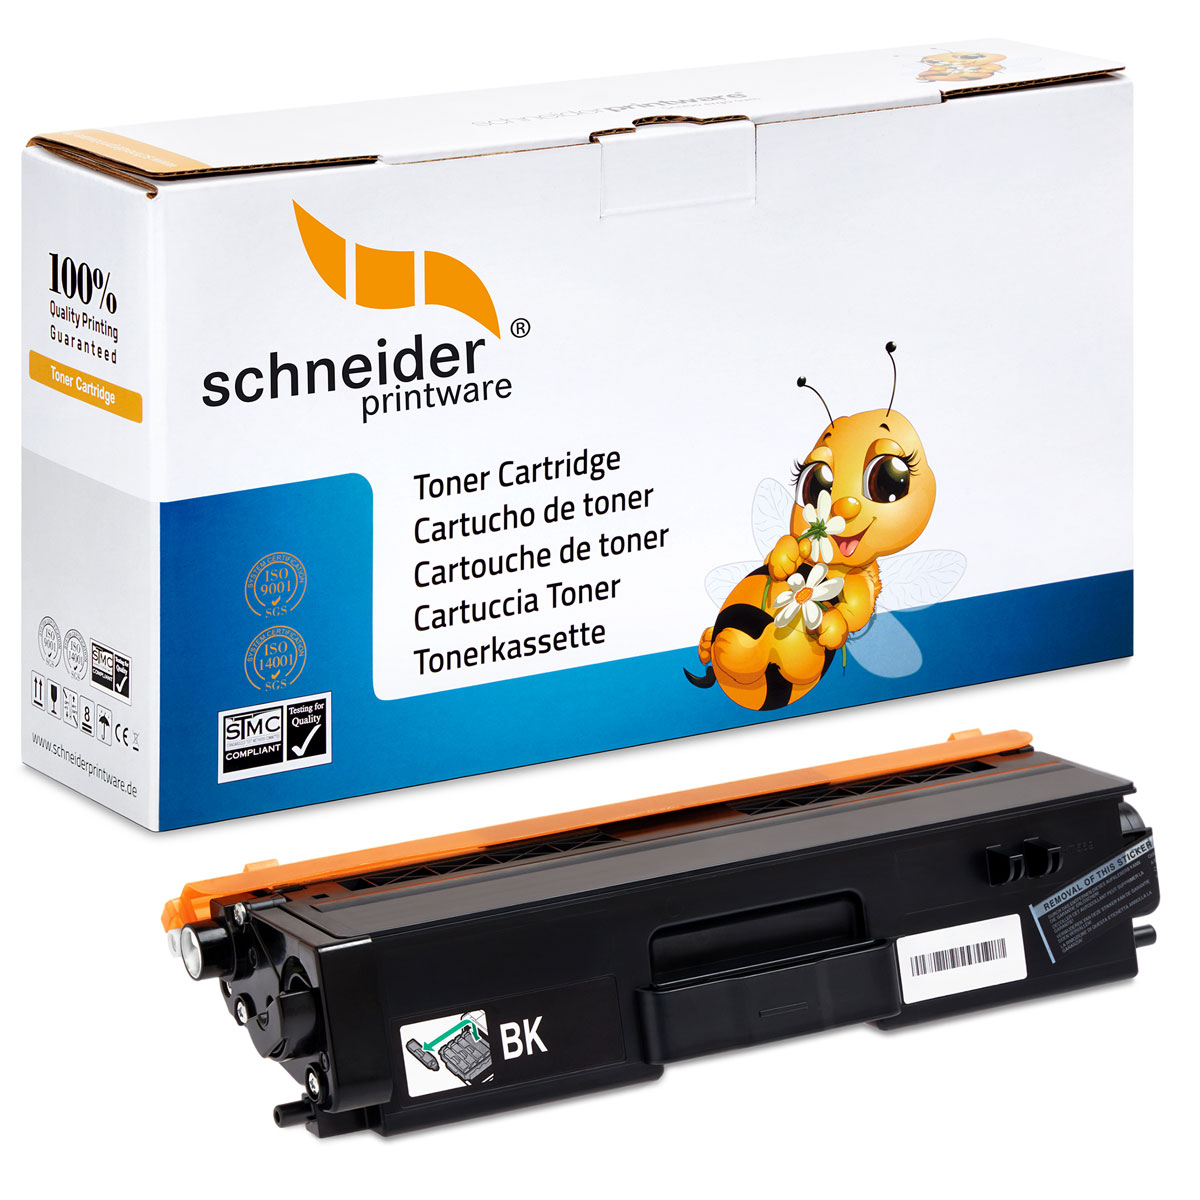 SCHNEIDERPRINTWARE Schneiderprintware Toner TN-421 Toner Black Brothern (TN-421) ersetzt BK